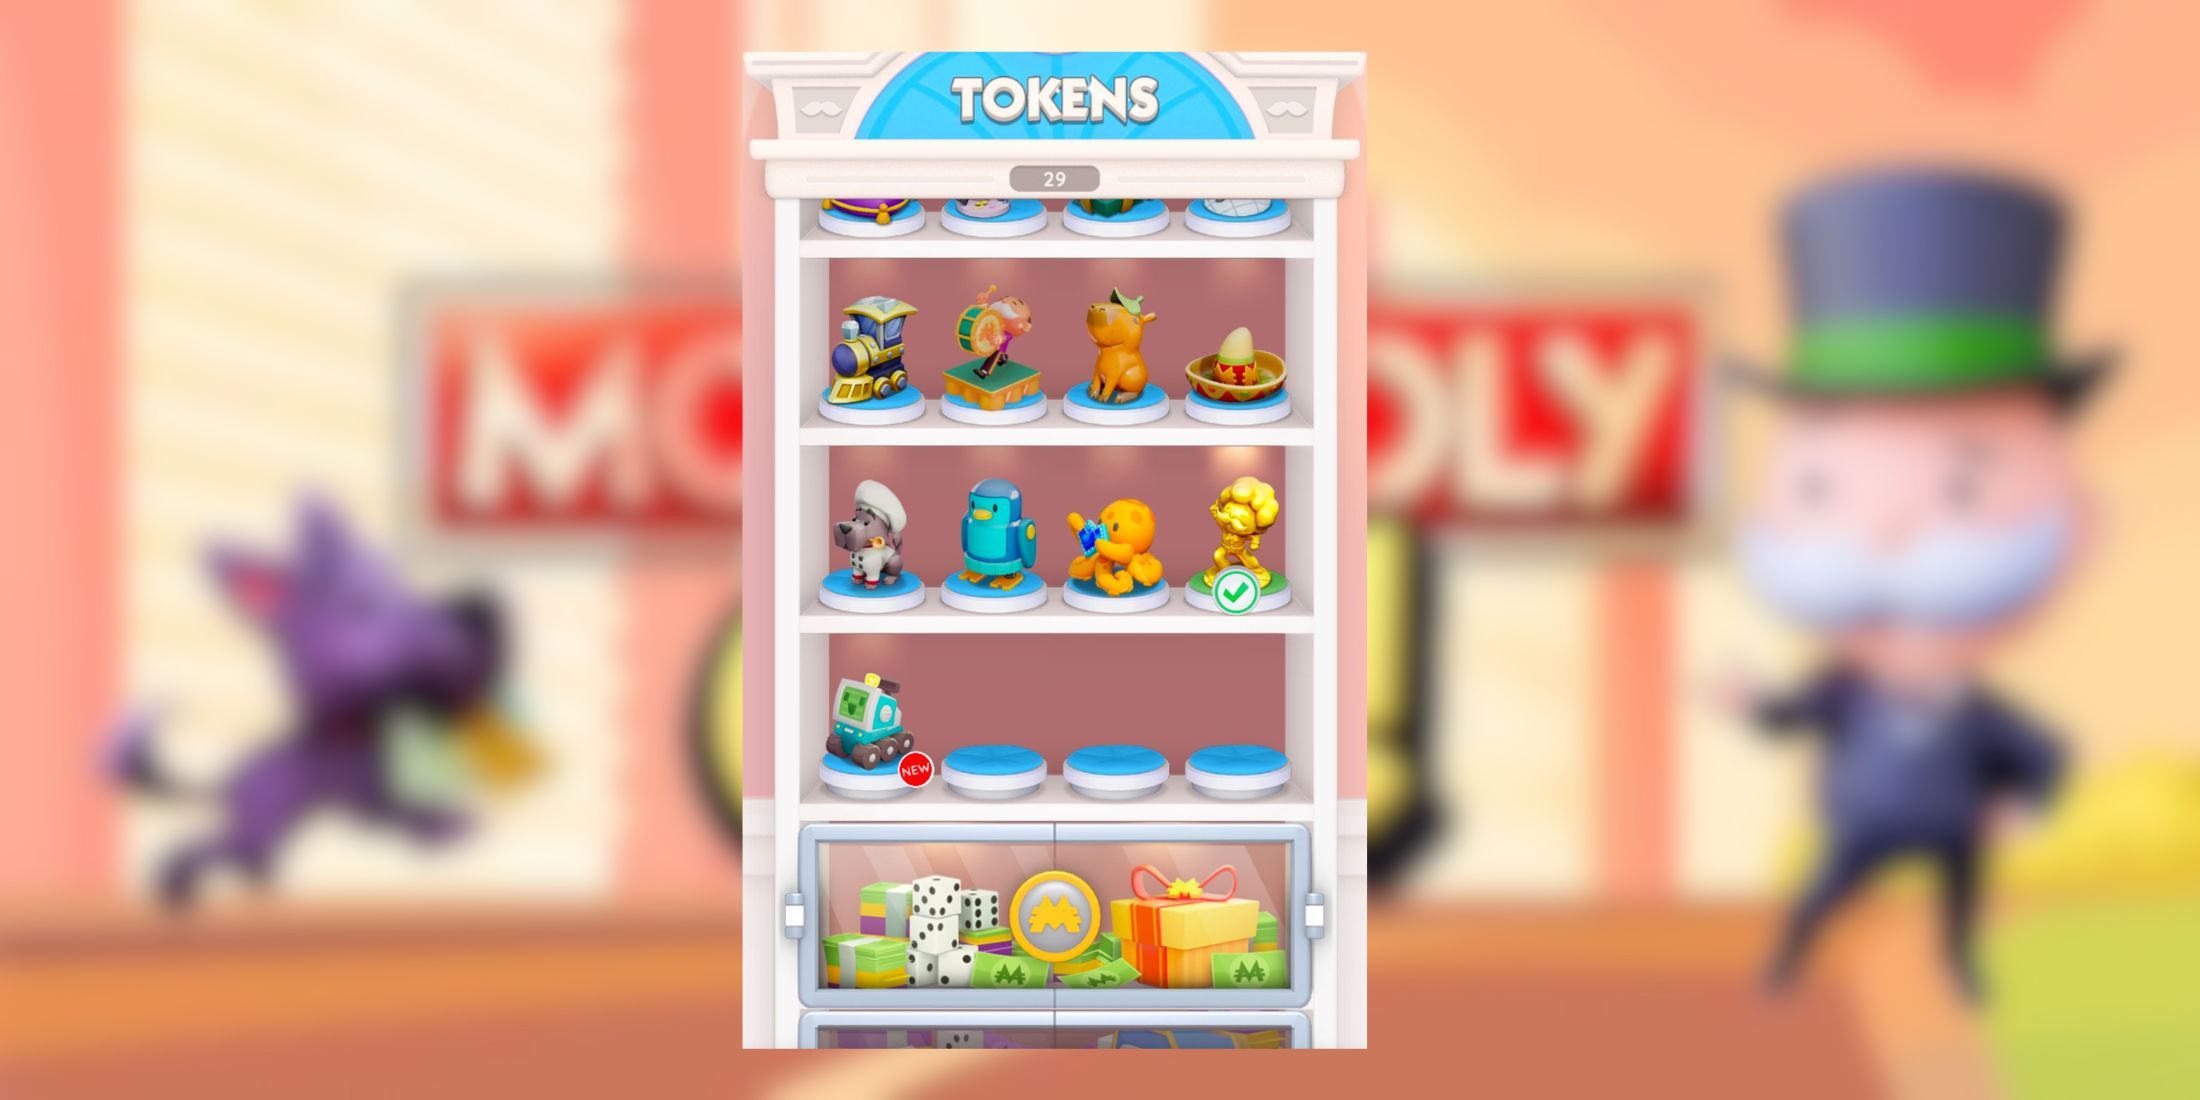 monopoly go token collection